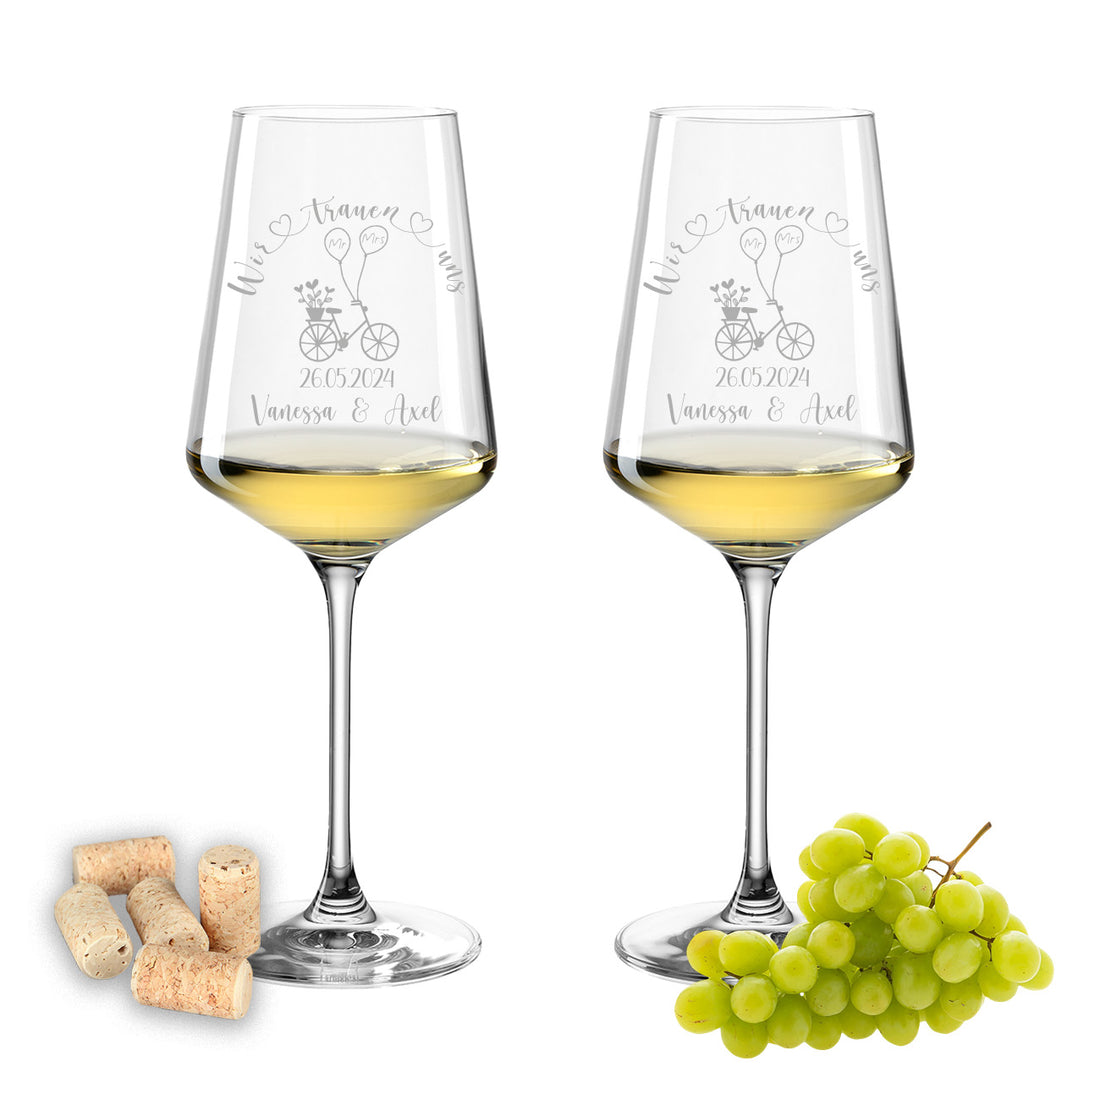 Weinglas mit Gravur Leonardo Puccini "WIR TRAUEN UNS" Motiv Fahrrad 2 Gläser mit Wunschname & Datum